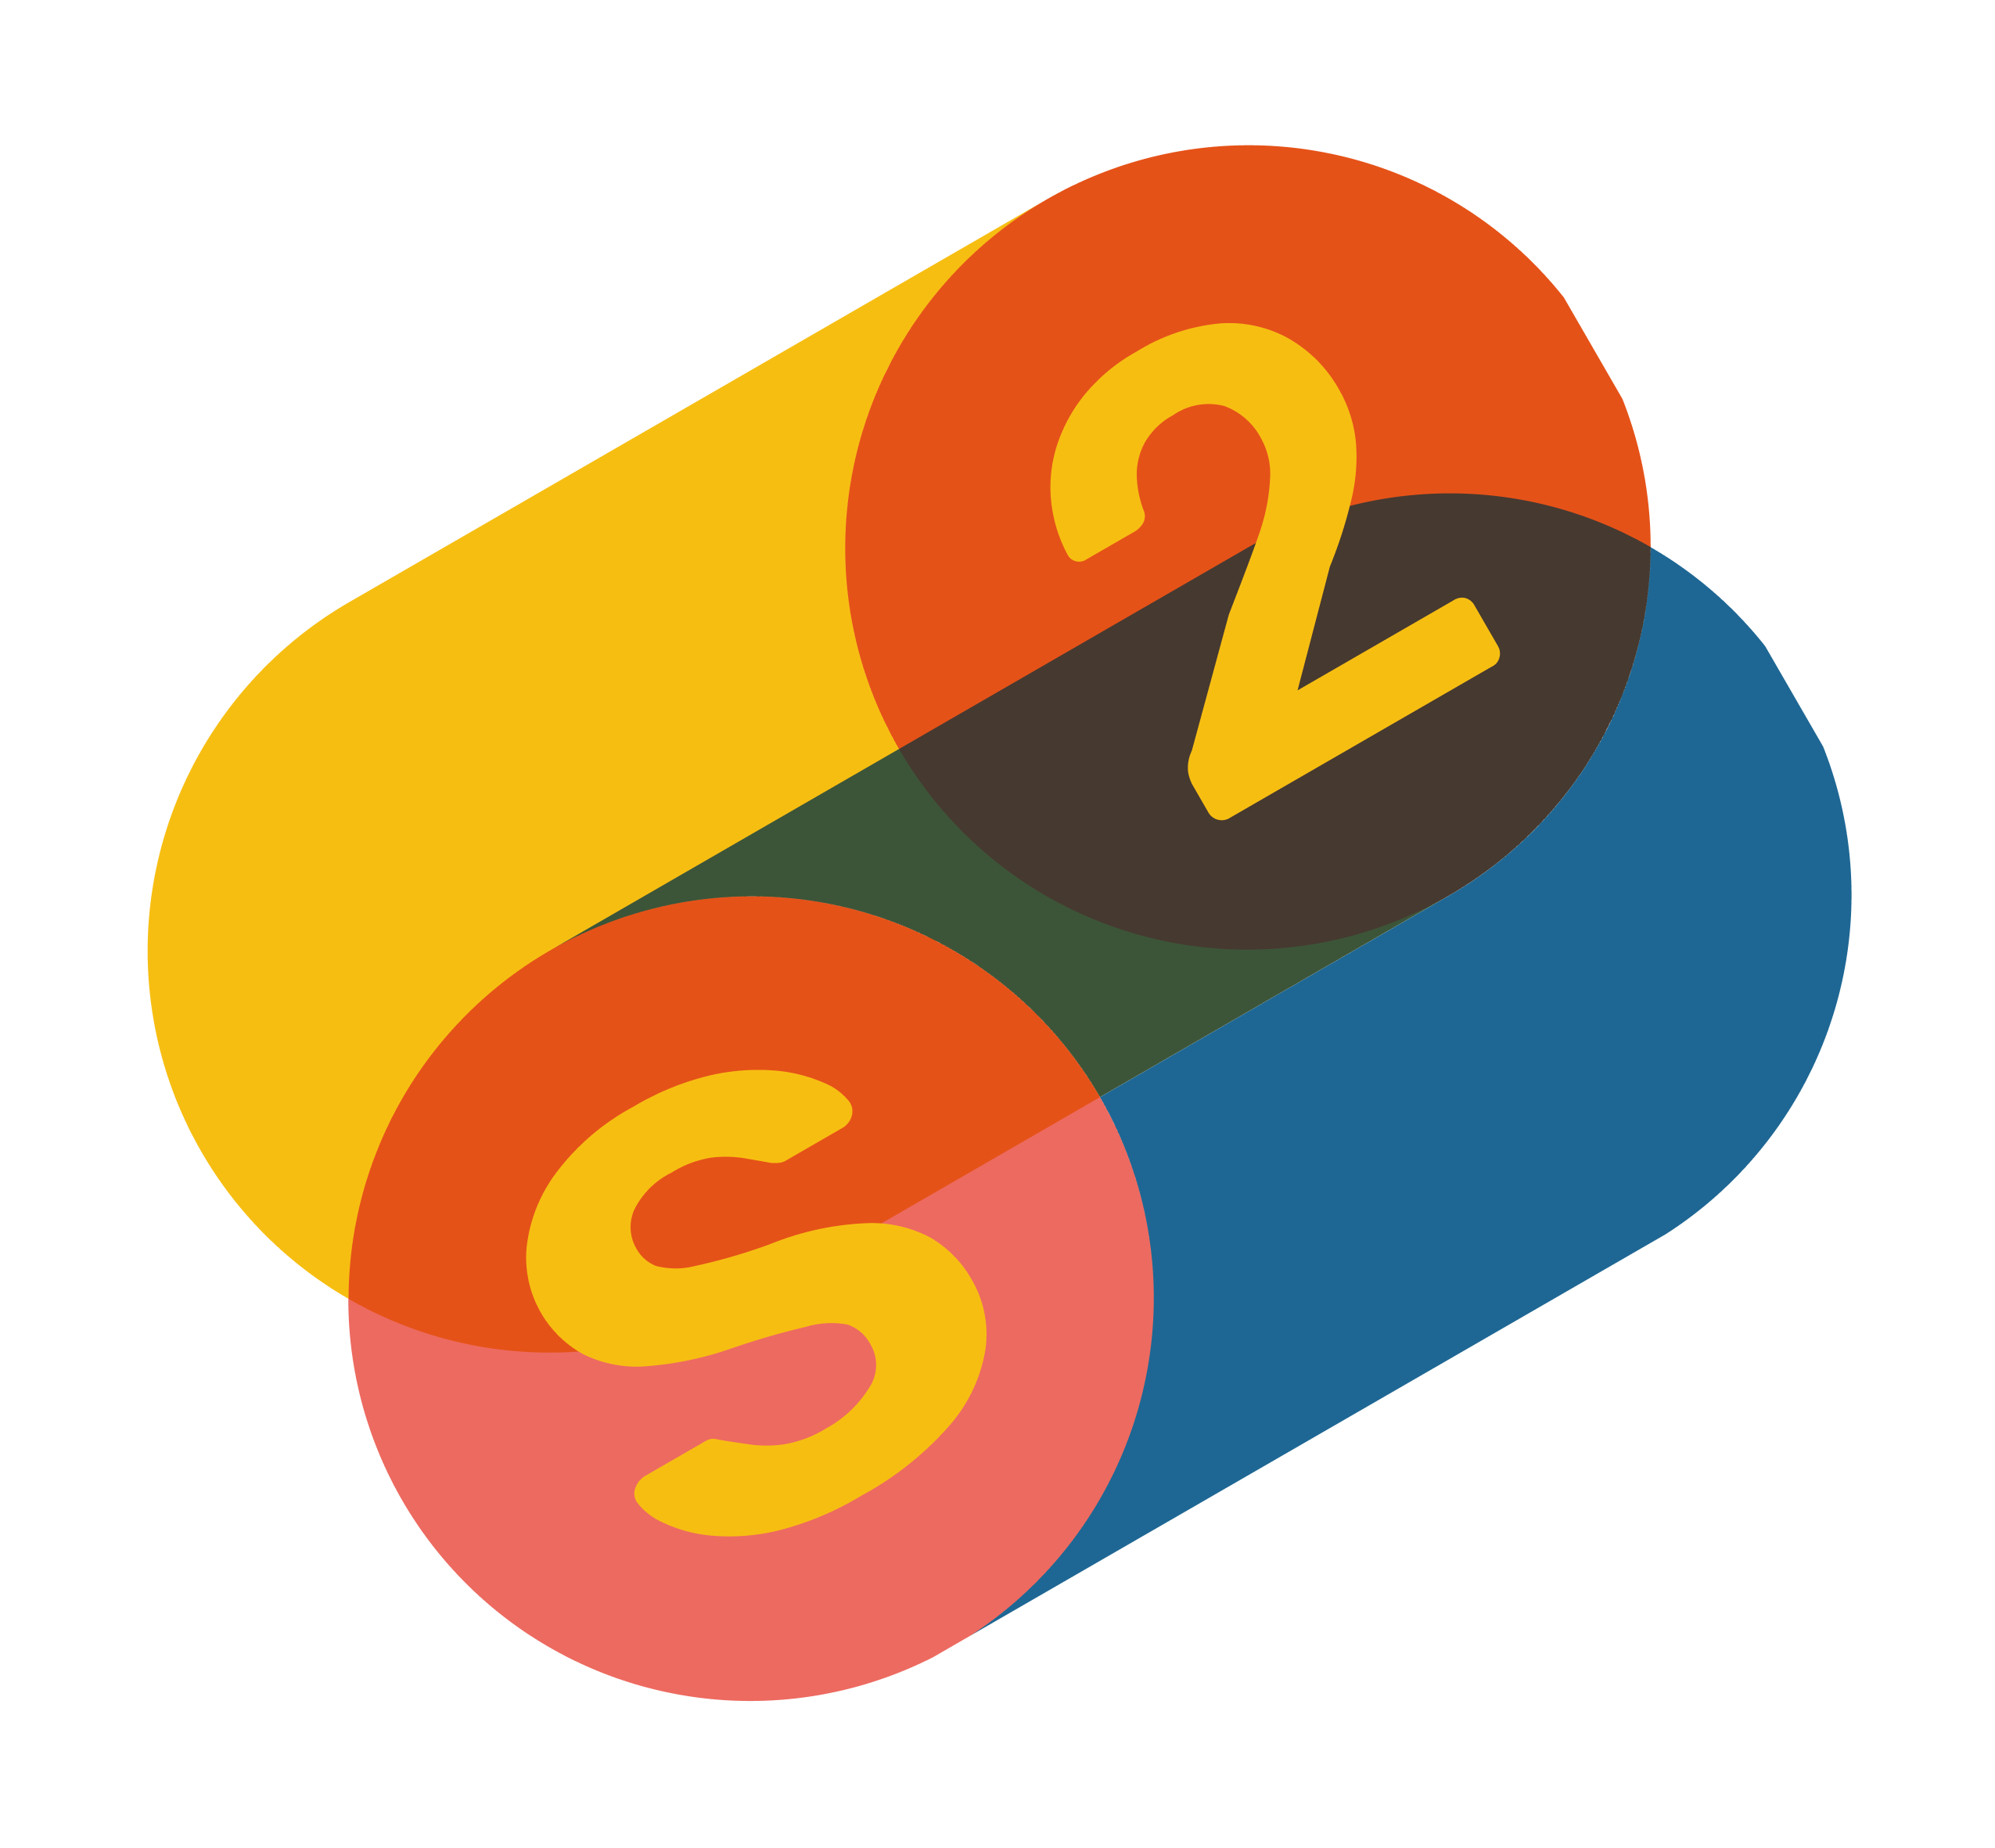 s2cities logo graphic decorative